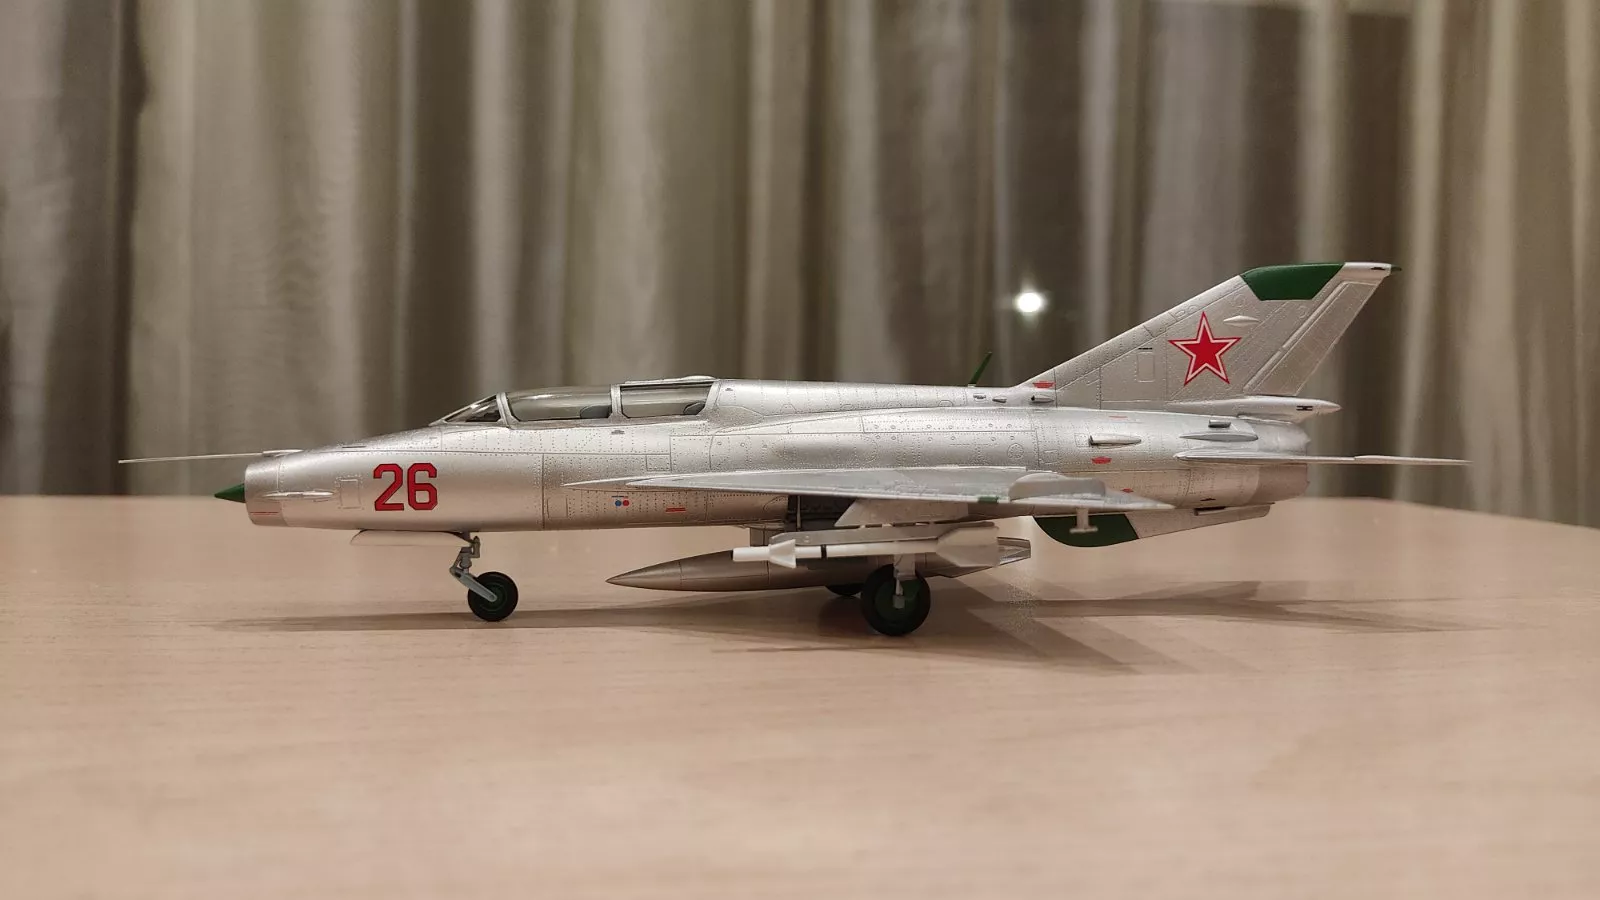 MiG-21UM „Mongol B“